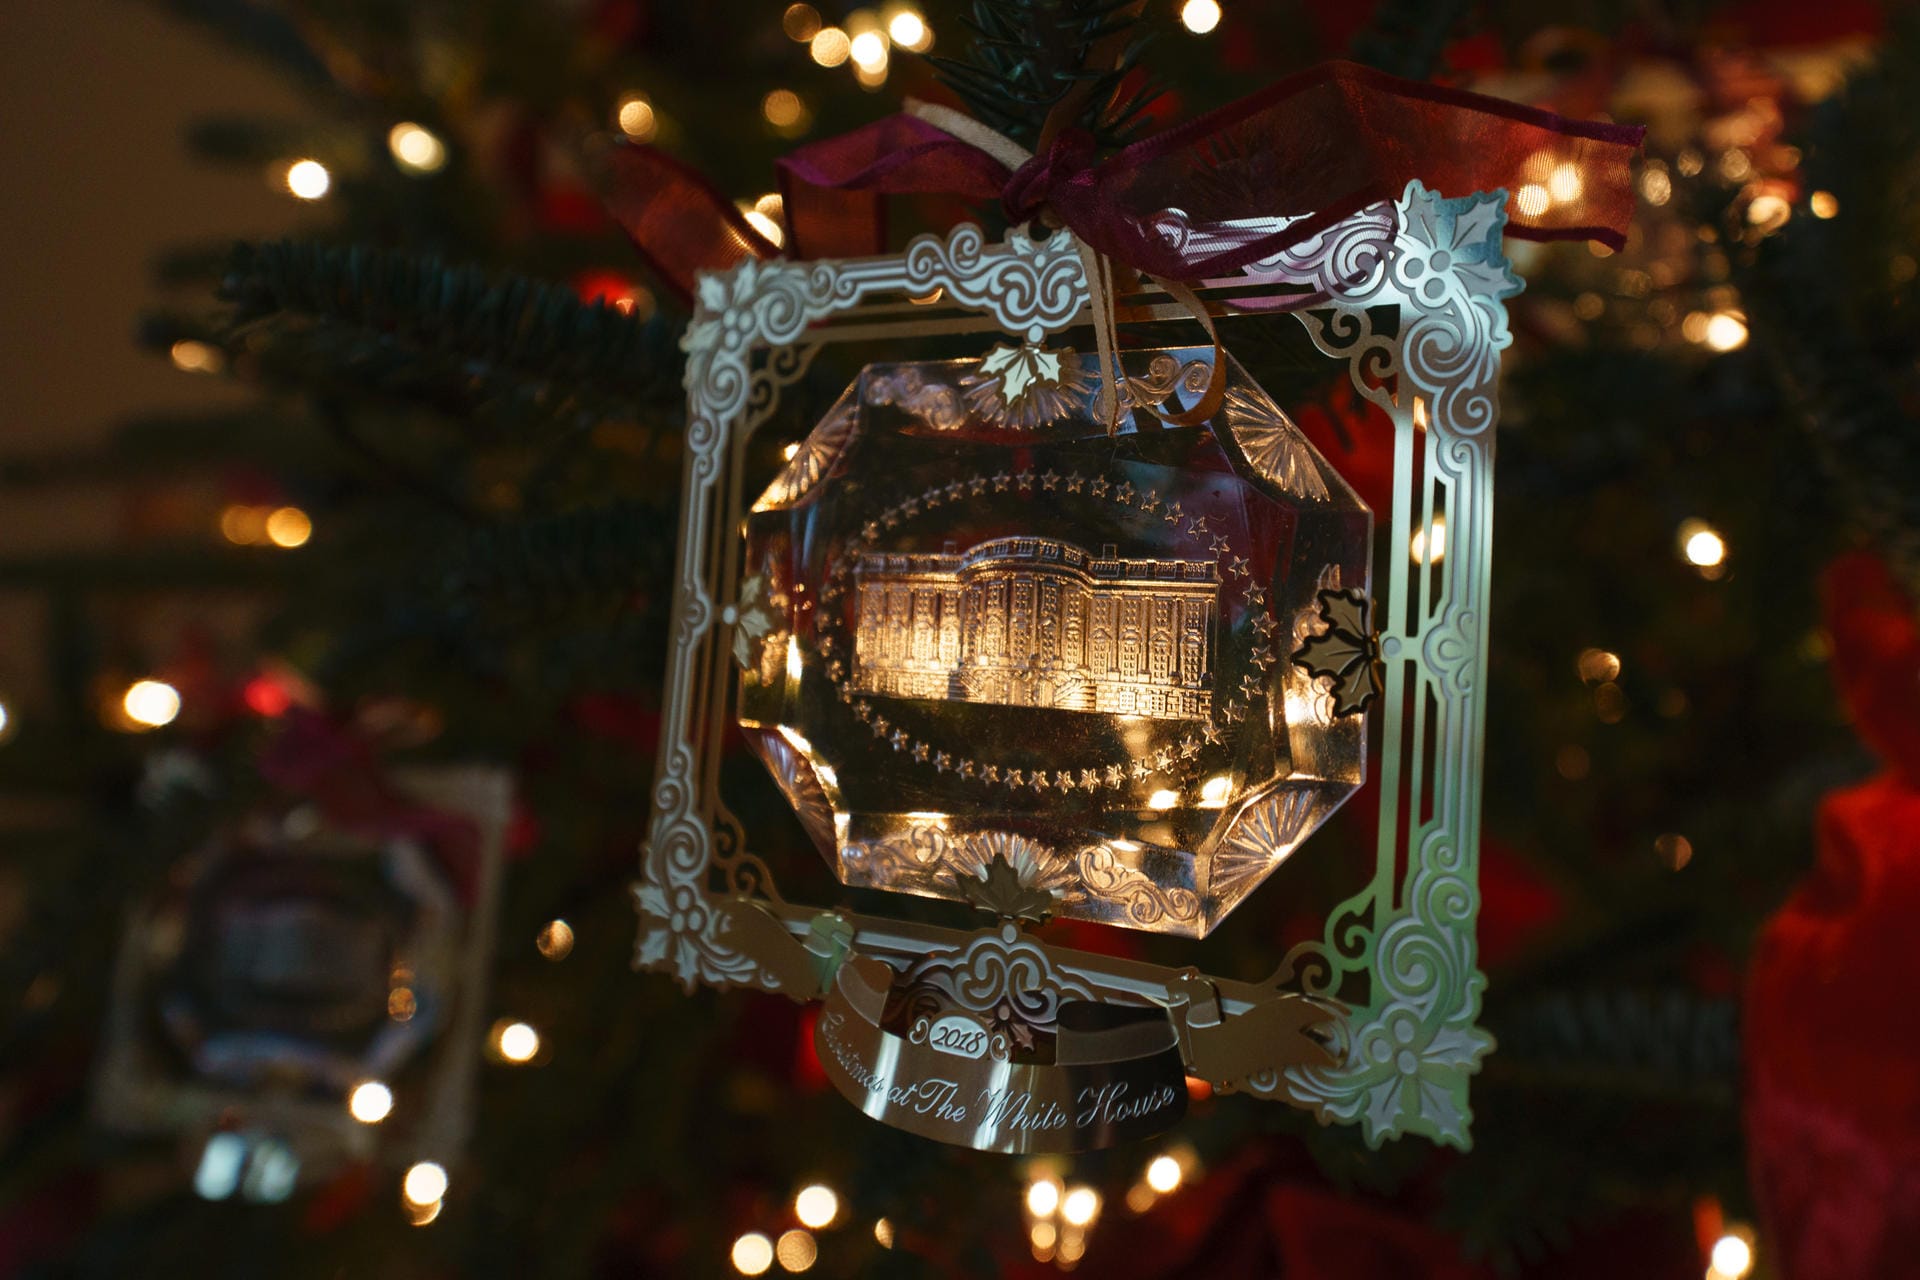 Der Weihnachtsschmuck 2018 der Präsidentenfamilie: Das Motto der Dekoration lautet in diesem Jahr "American Treasures" ("Amerikanische Schätze").